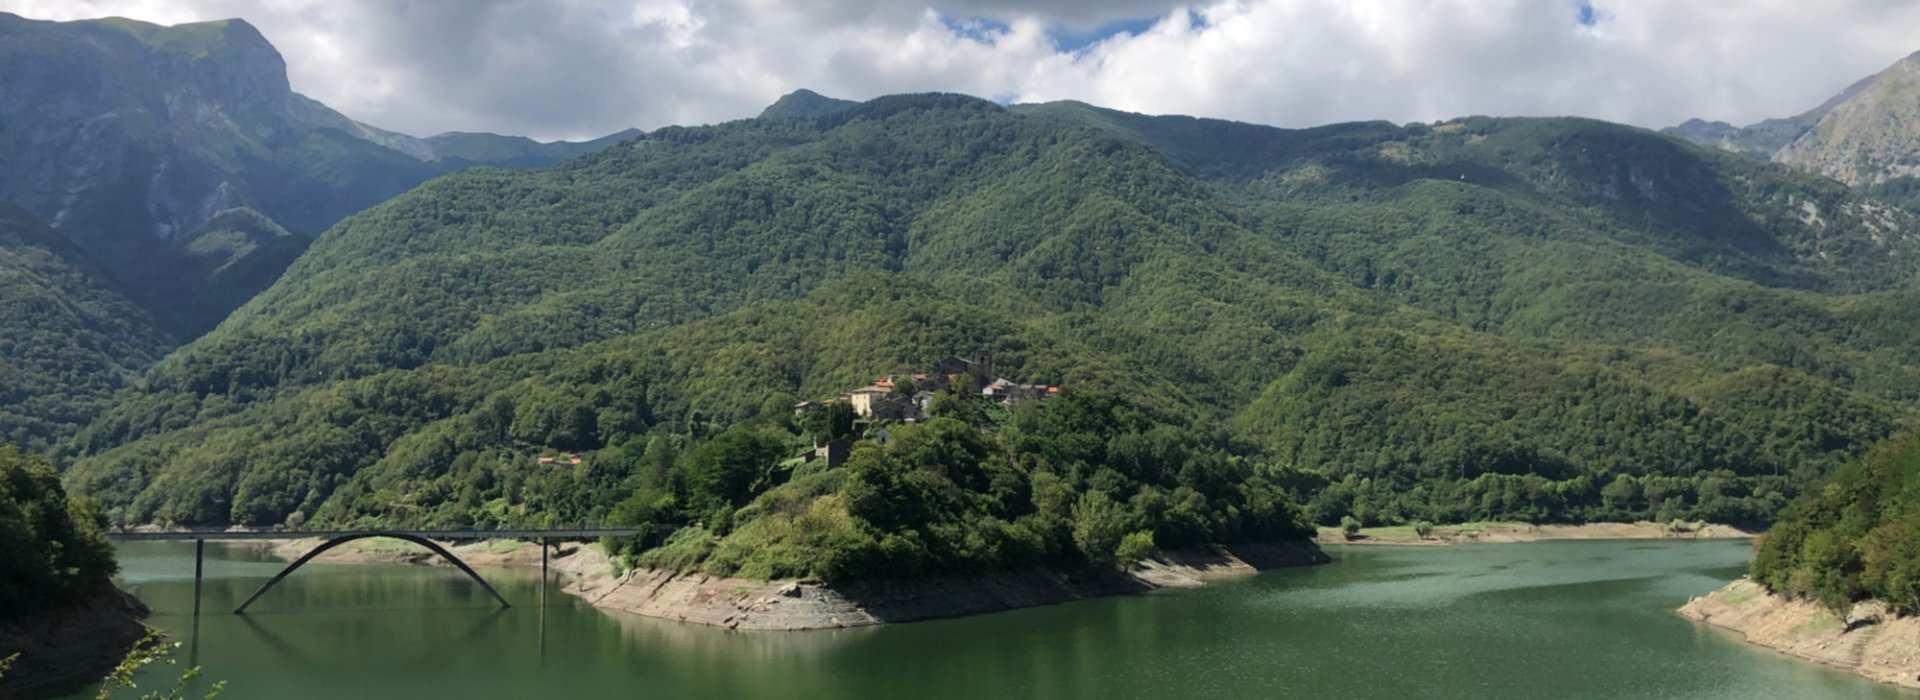 Il lago di Vagli, uno dei più importanti della Garfagnana